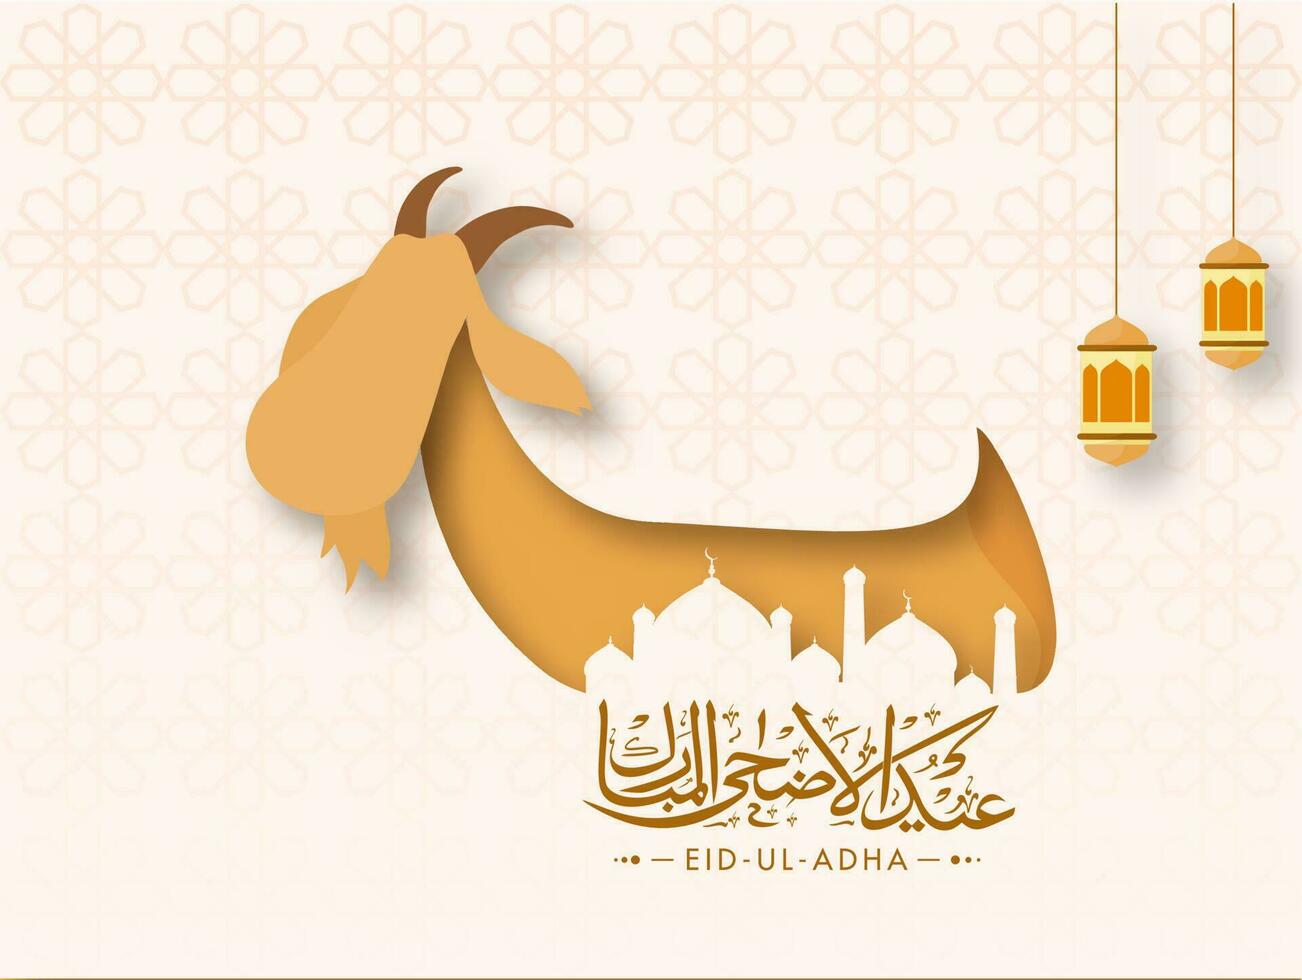 eid-ul-adha schoonschrift in Arabisch taal met papier besnoeiing geit en hangende lantaarns Aan Islamitisch patroon achtergrond. vector